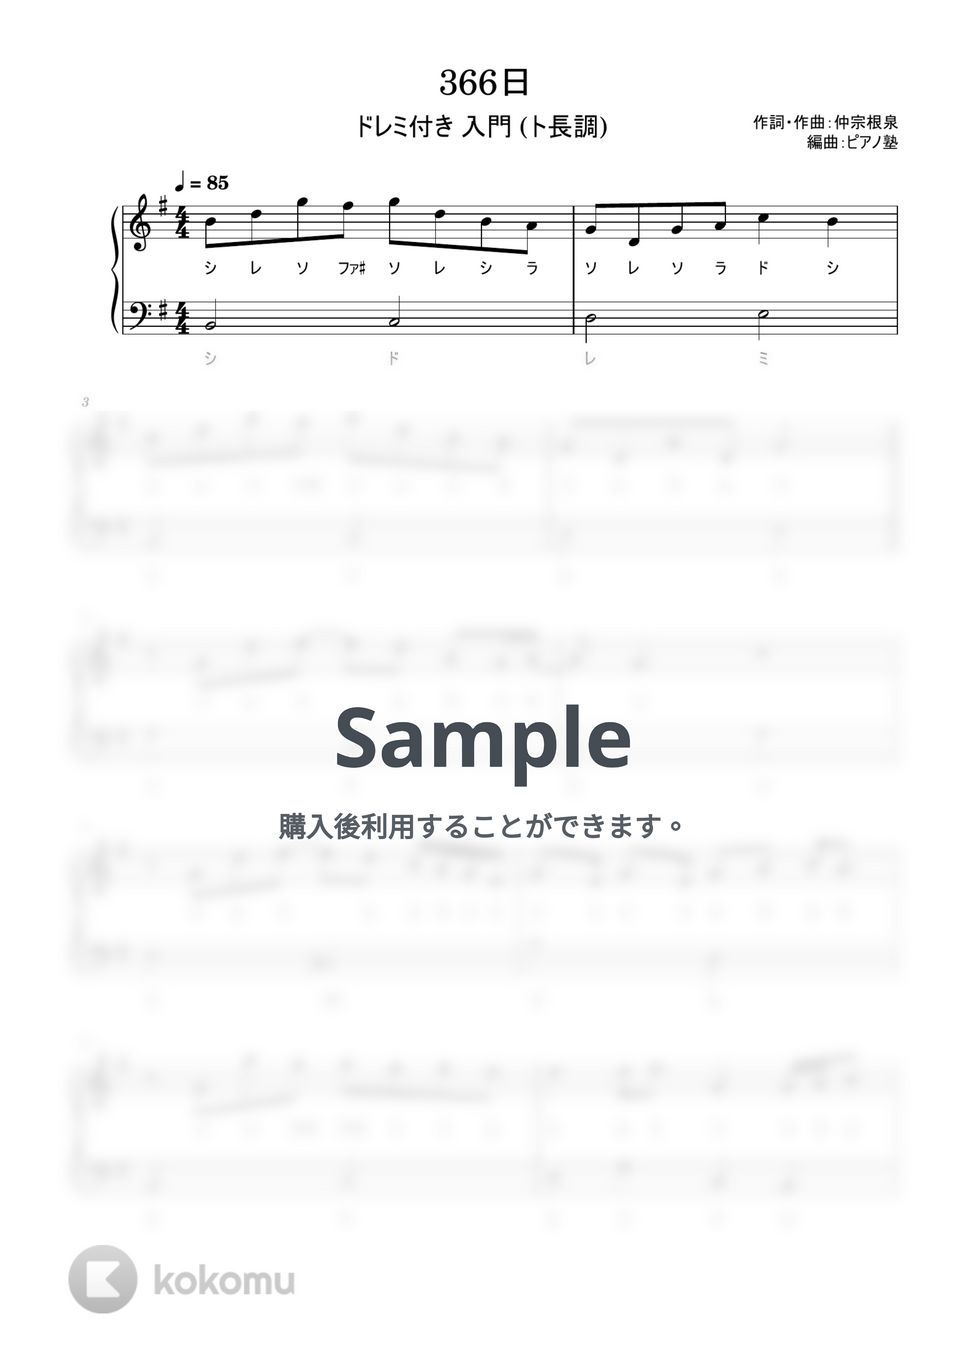 HY - 366日 (ドレミ付き/簡単楽譜/ト長調) by ピアノ塾